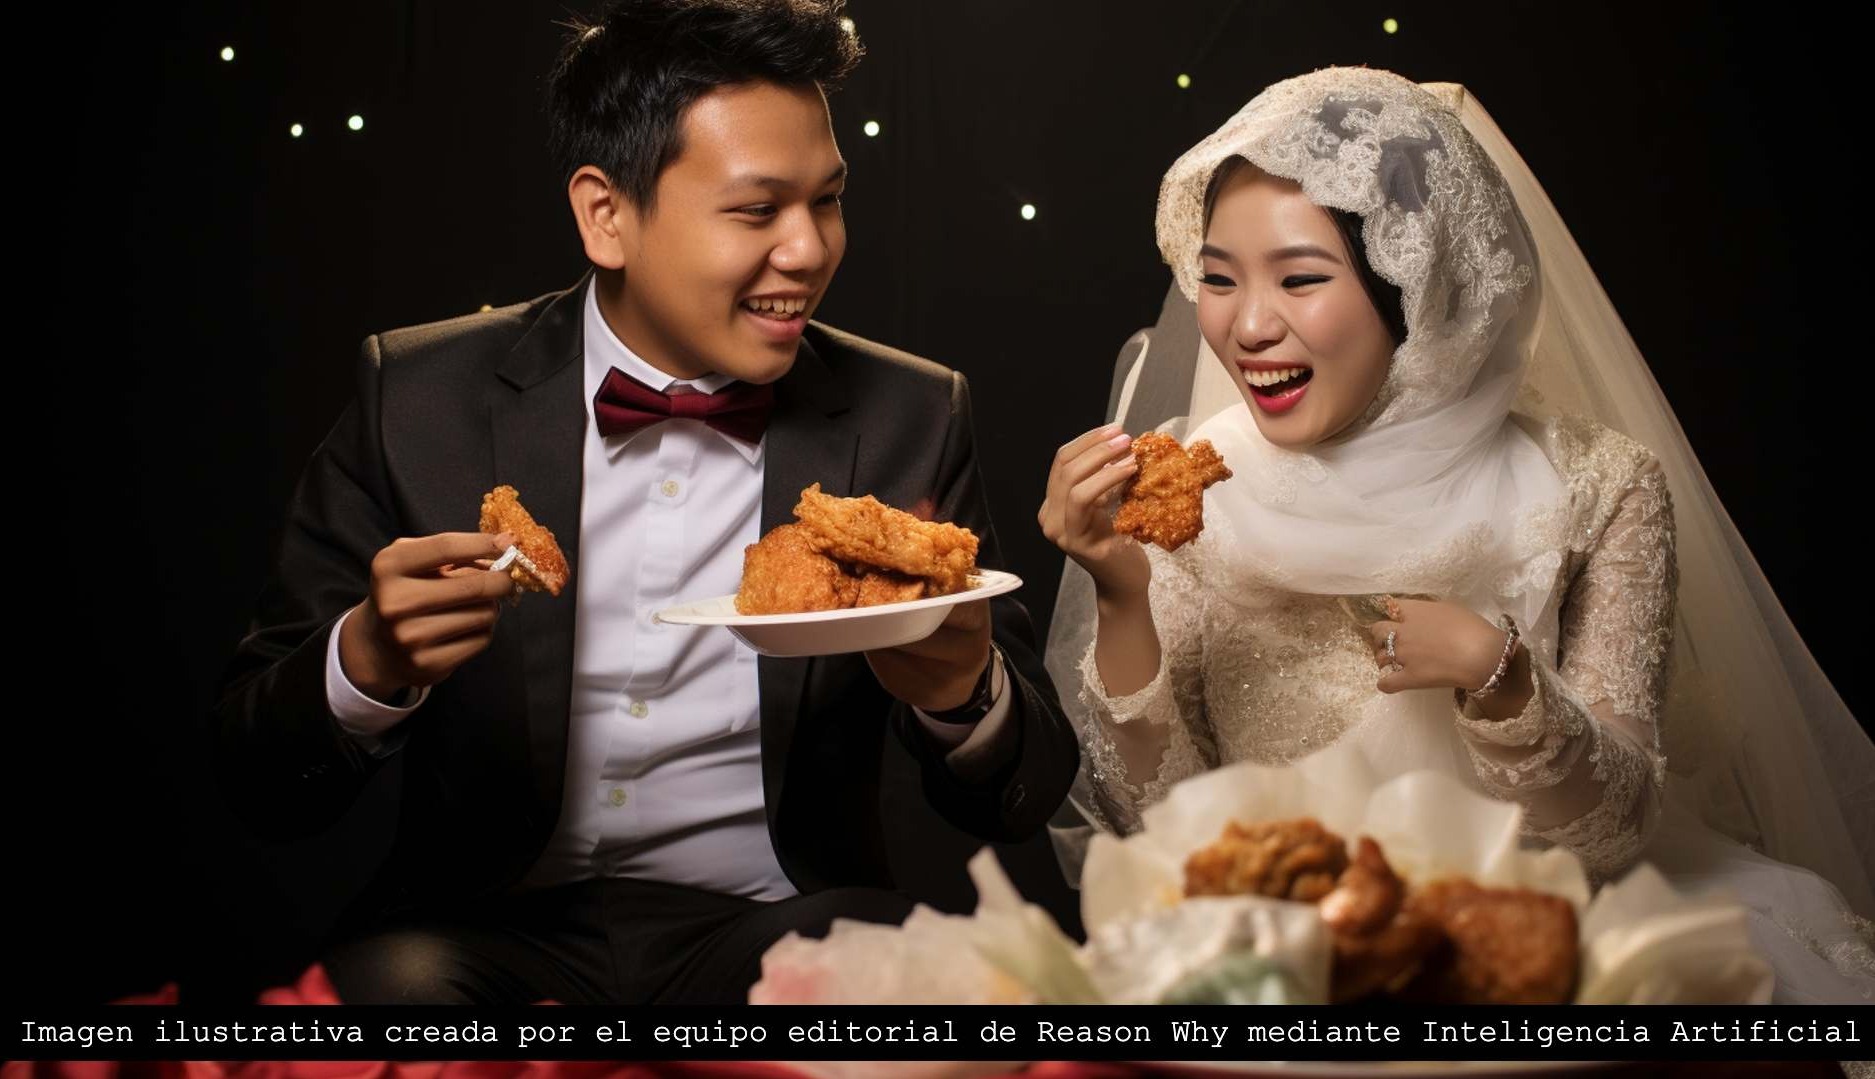 McDonald's Indonesia ofrece un menú para bodas que incluye 100 hamburguesas y 100 paquetes de nuggets